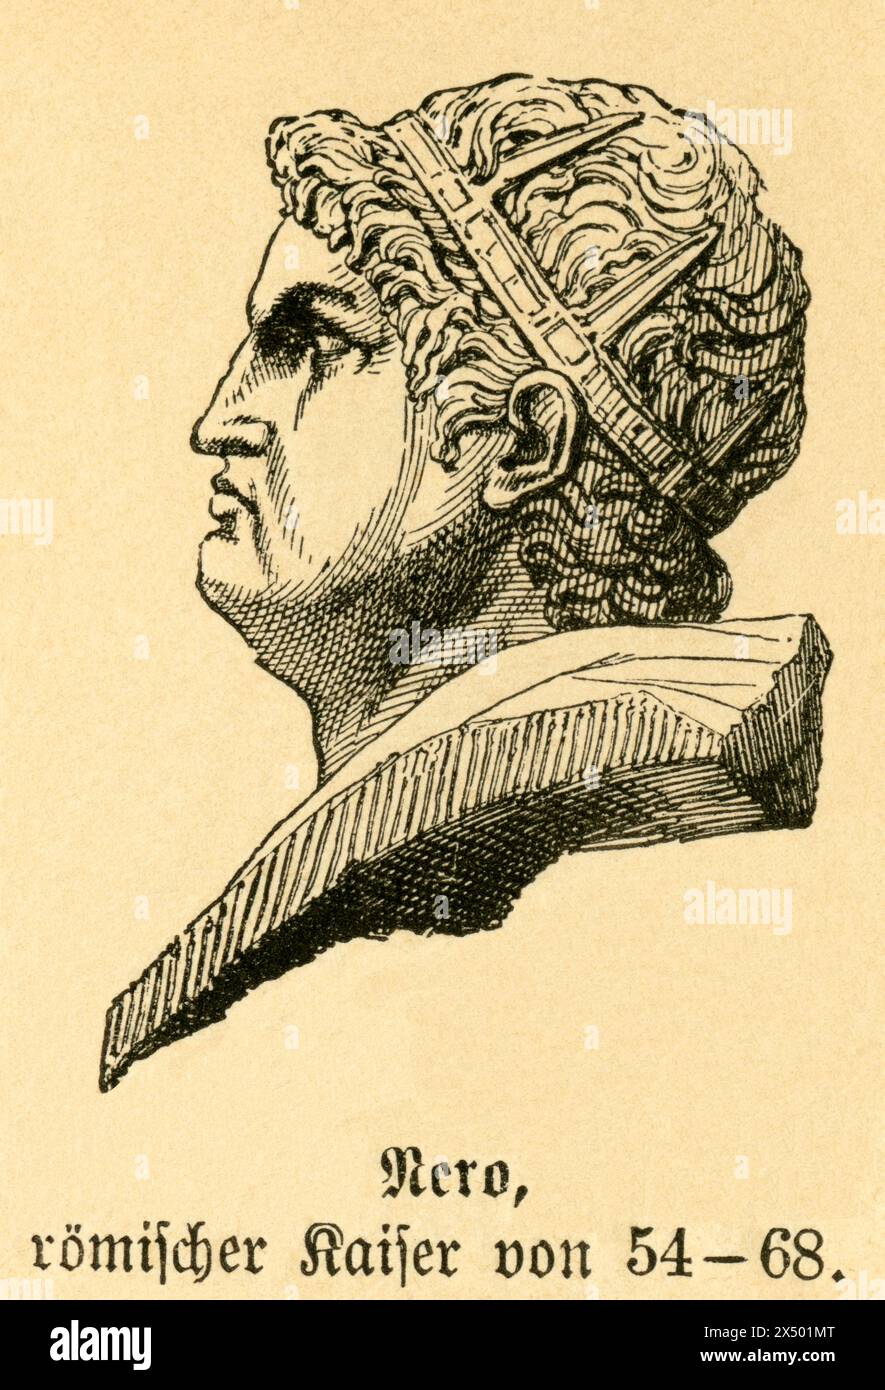 Nero, römischer Kaiser, das URHEBERRECHT DES KÜNSTLERS MUSS NICHT GELÖSCHT WERDEN Stockfoto